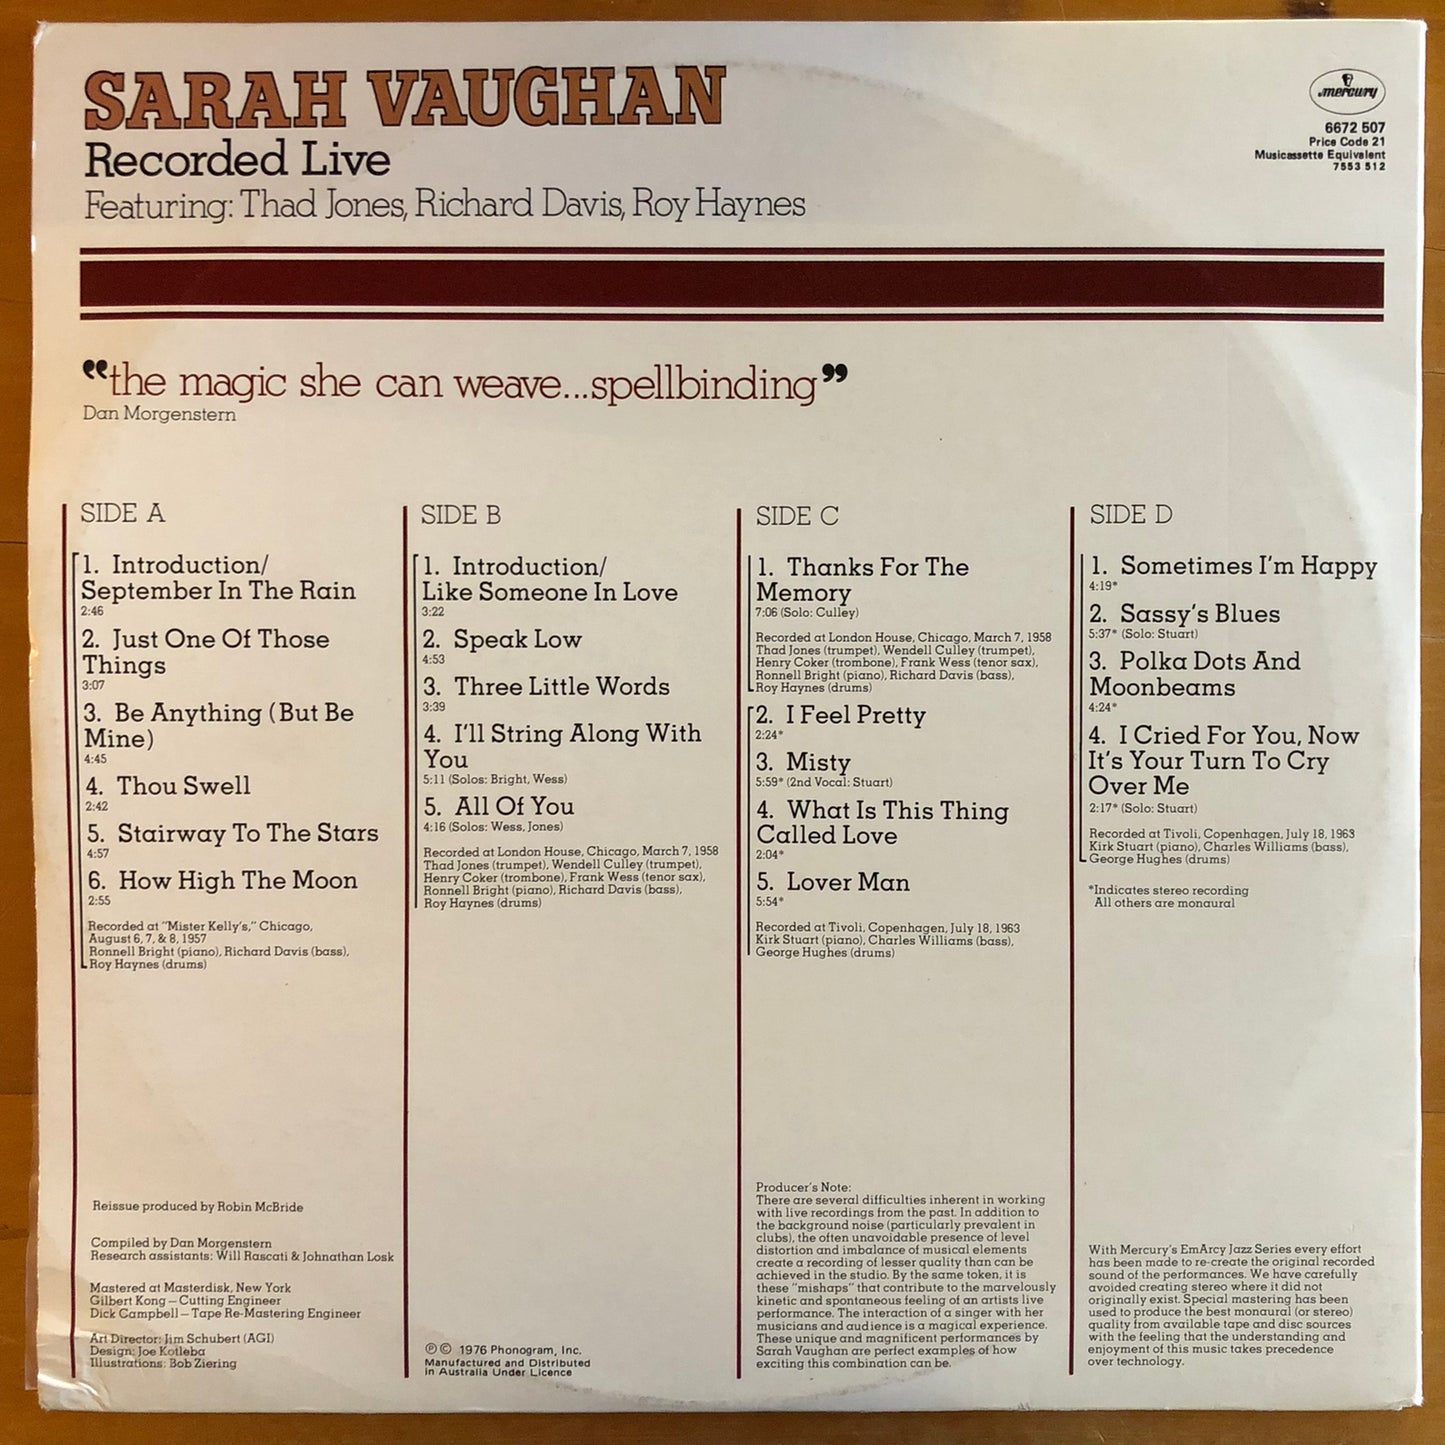 Sarah Vaughan - Recorded Live (2xLP)